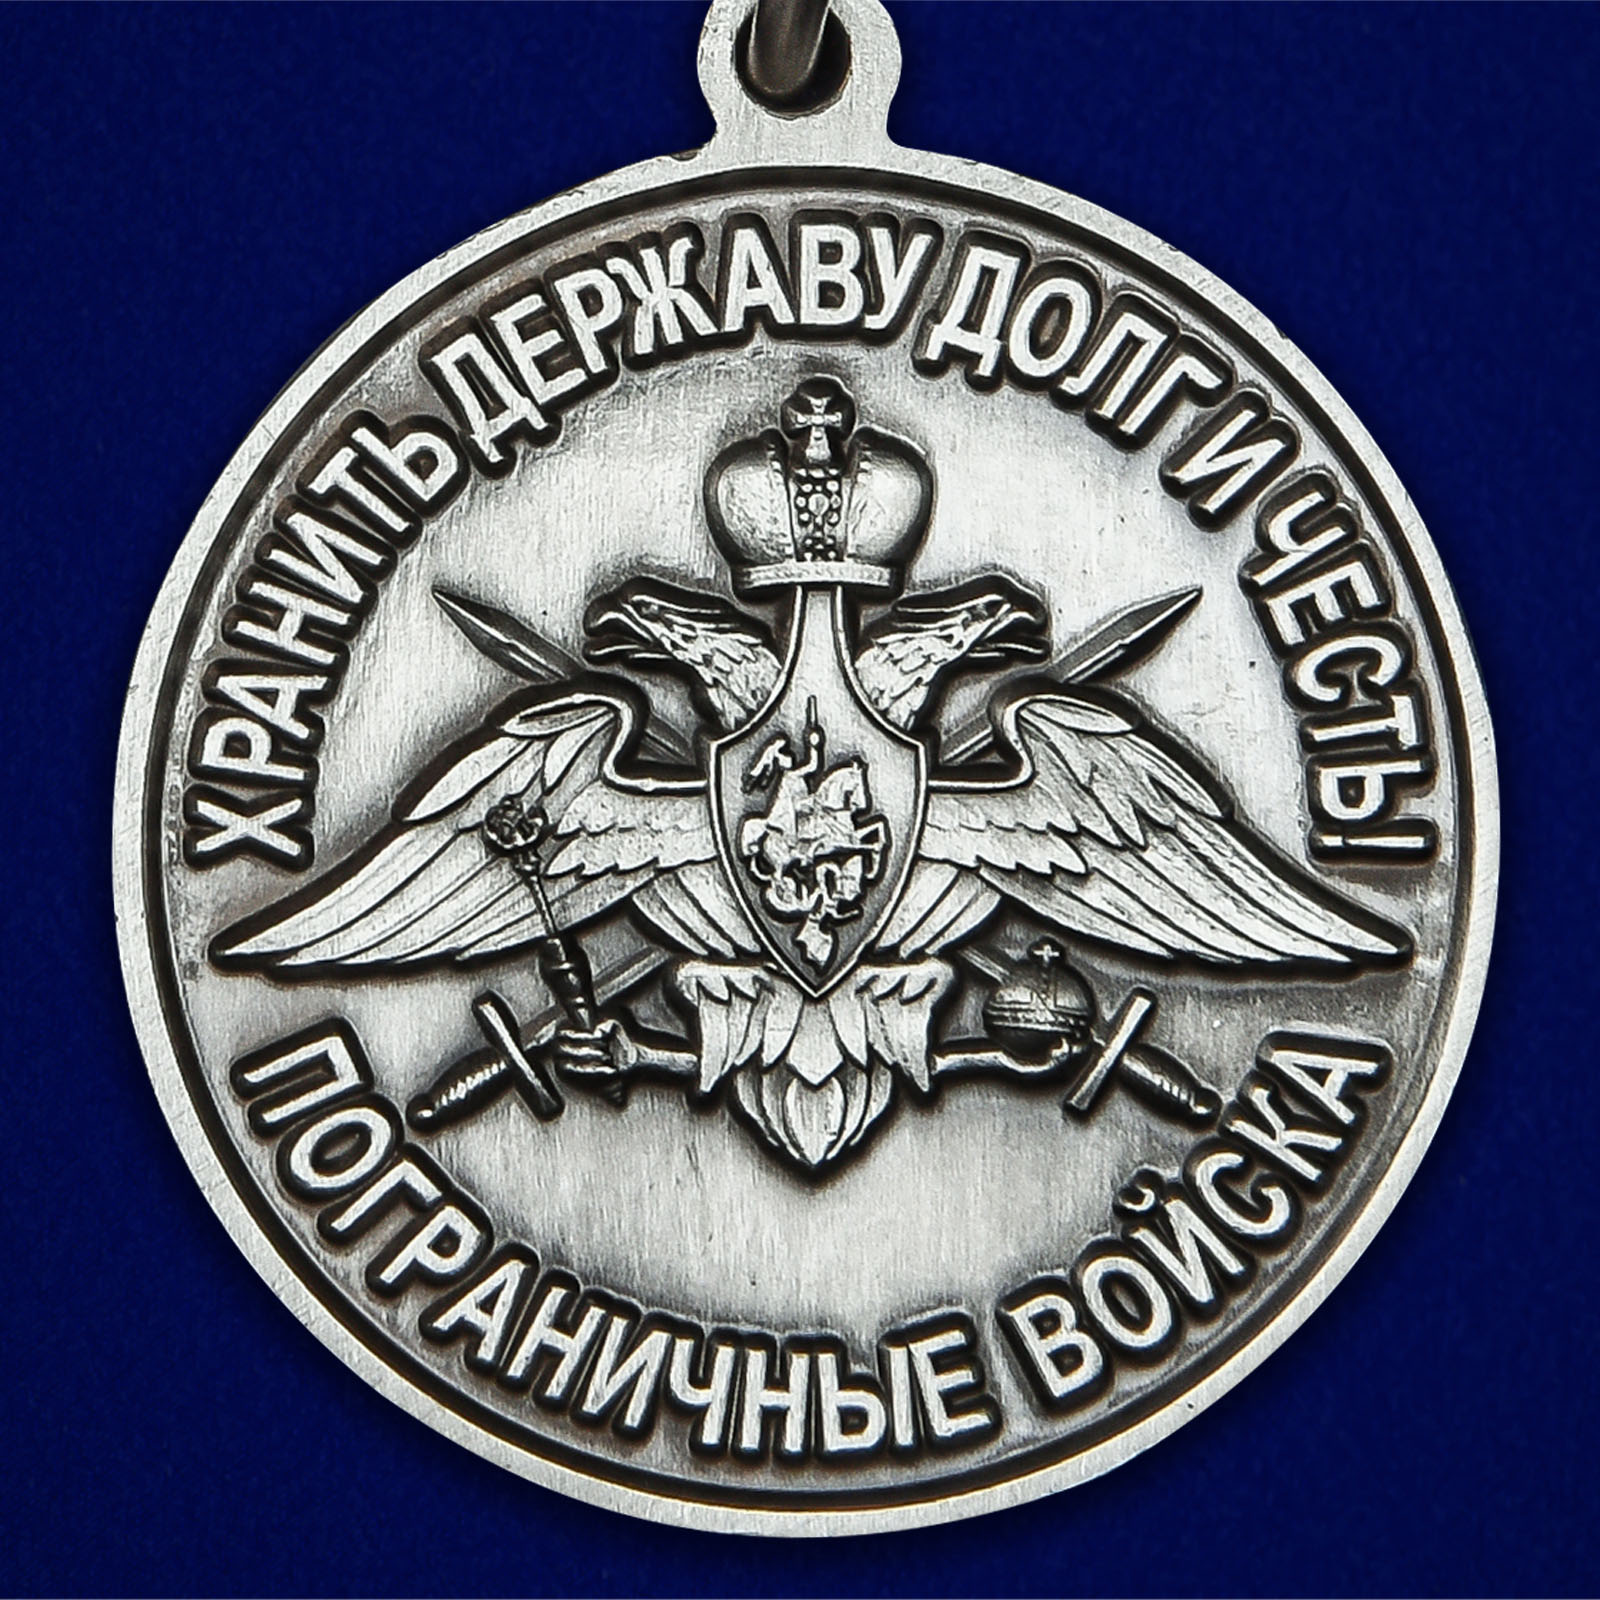 Медаль "За службу в Тахта-Базарском пограничном отряде" 